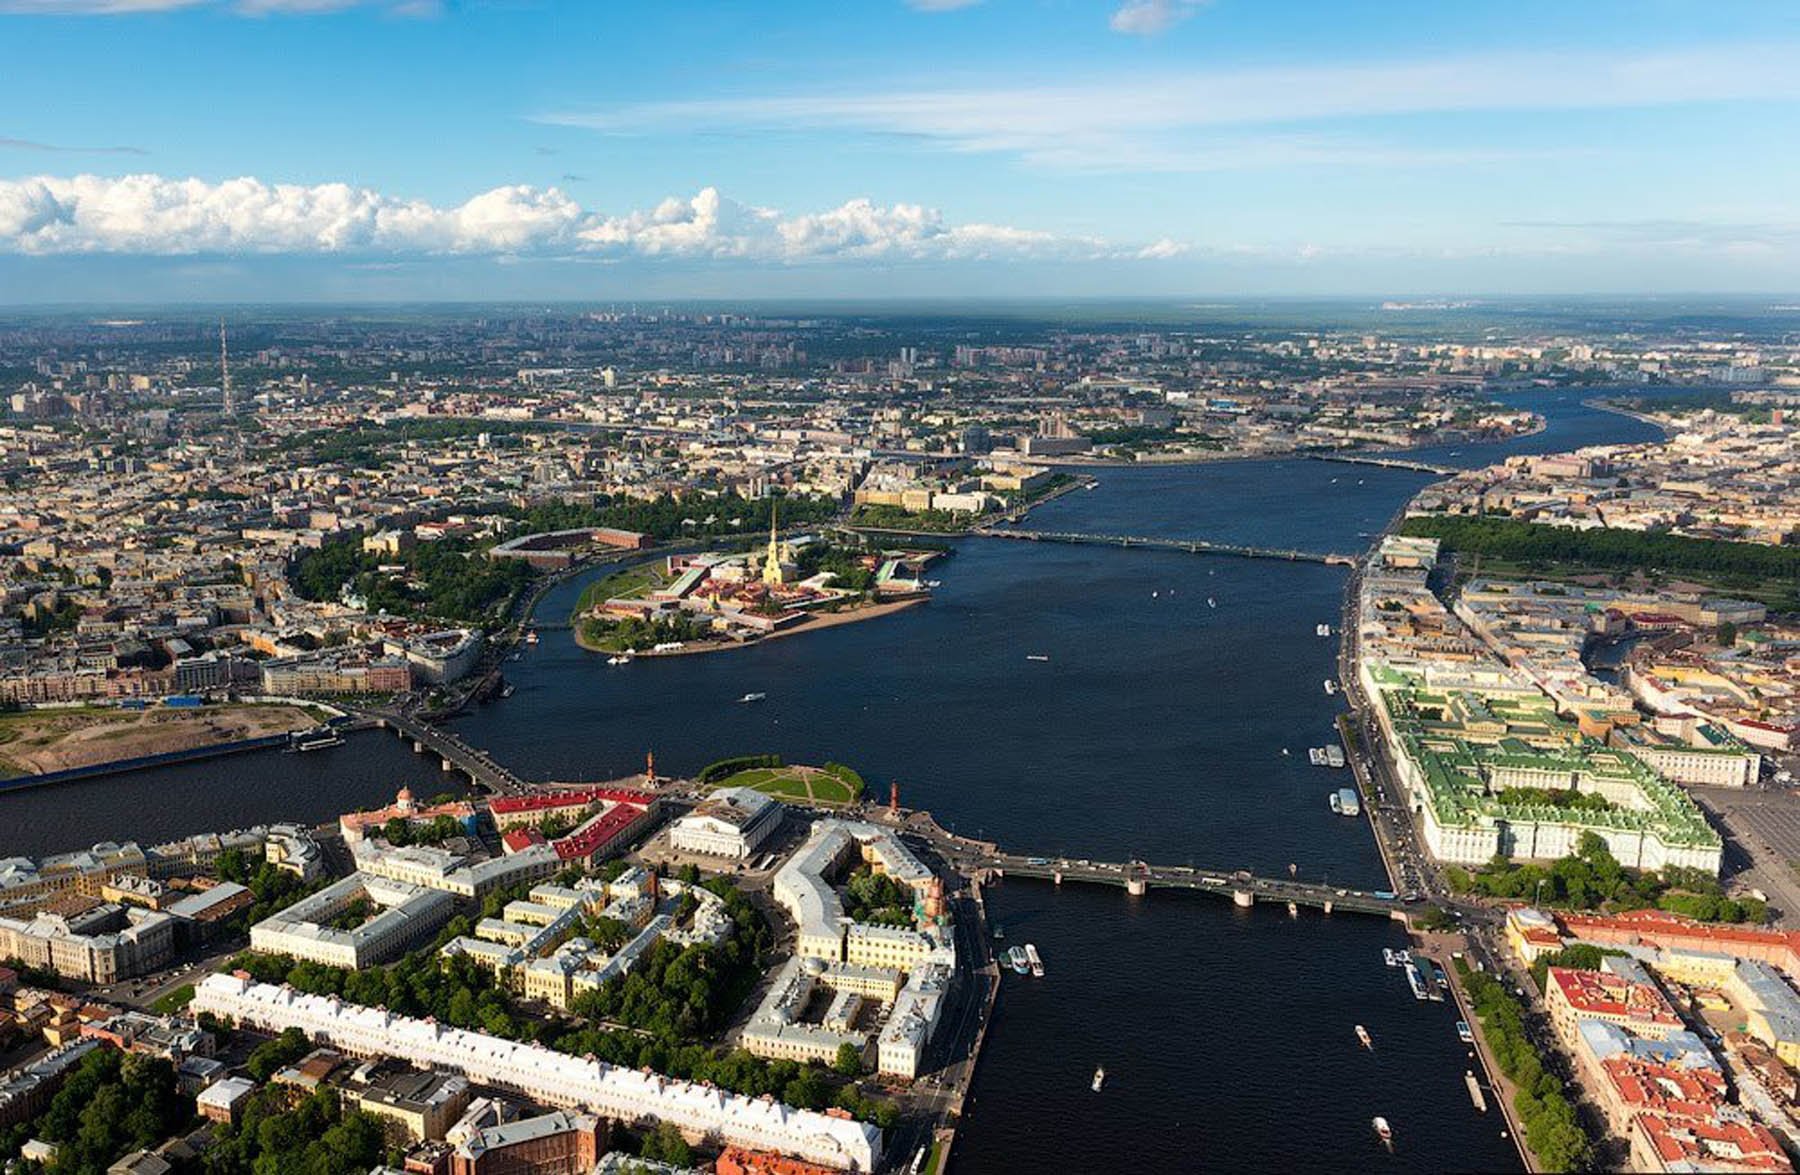 Часть васильевского острова. Санкт-Петербург с высоты птичьего полета.